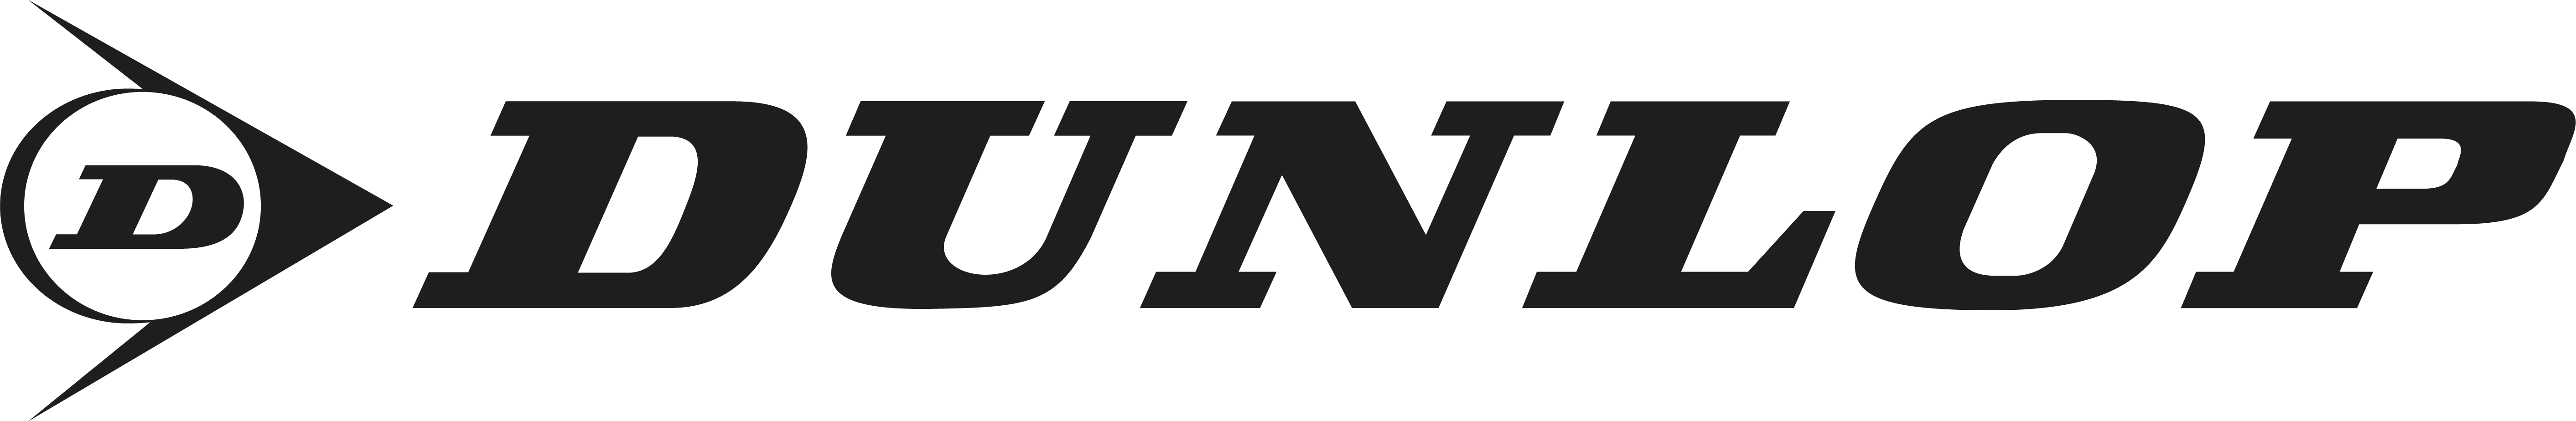 Imagem logo